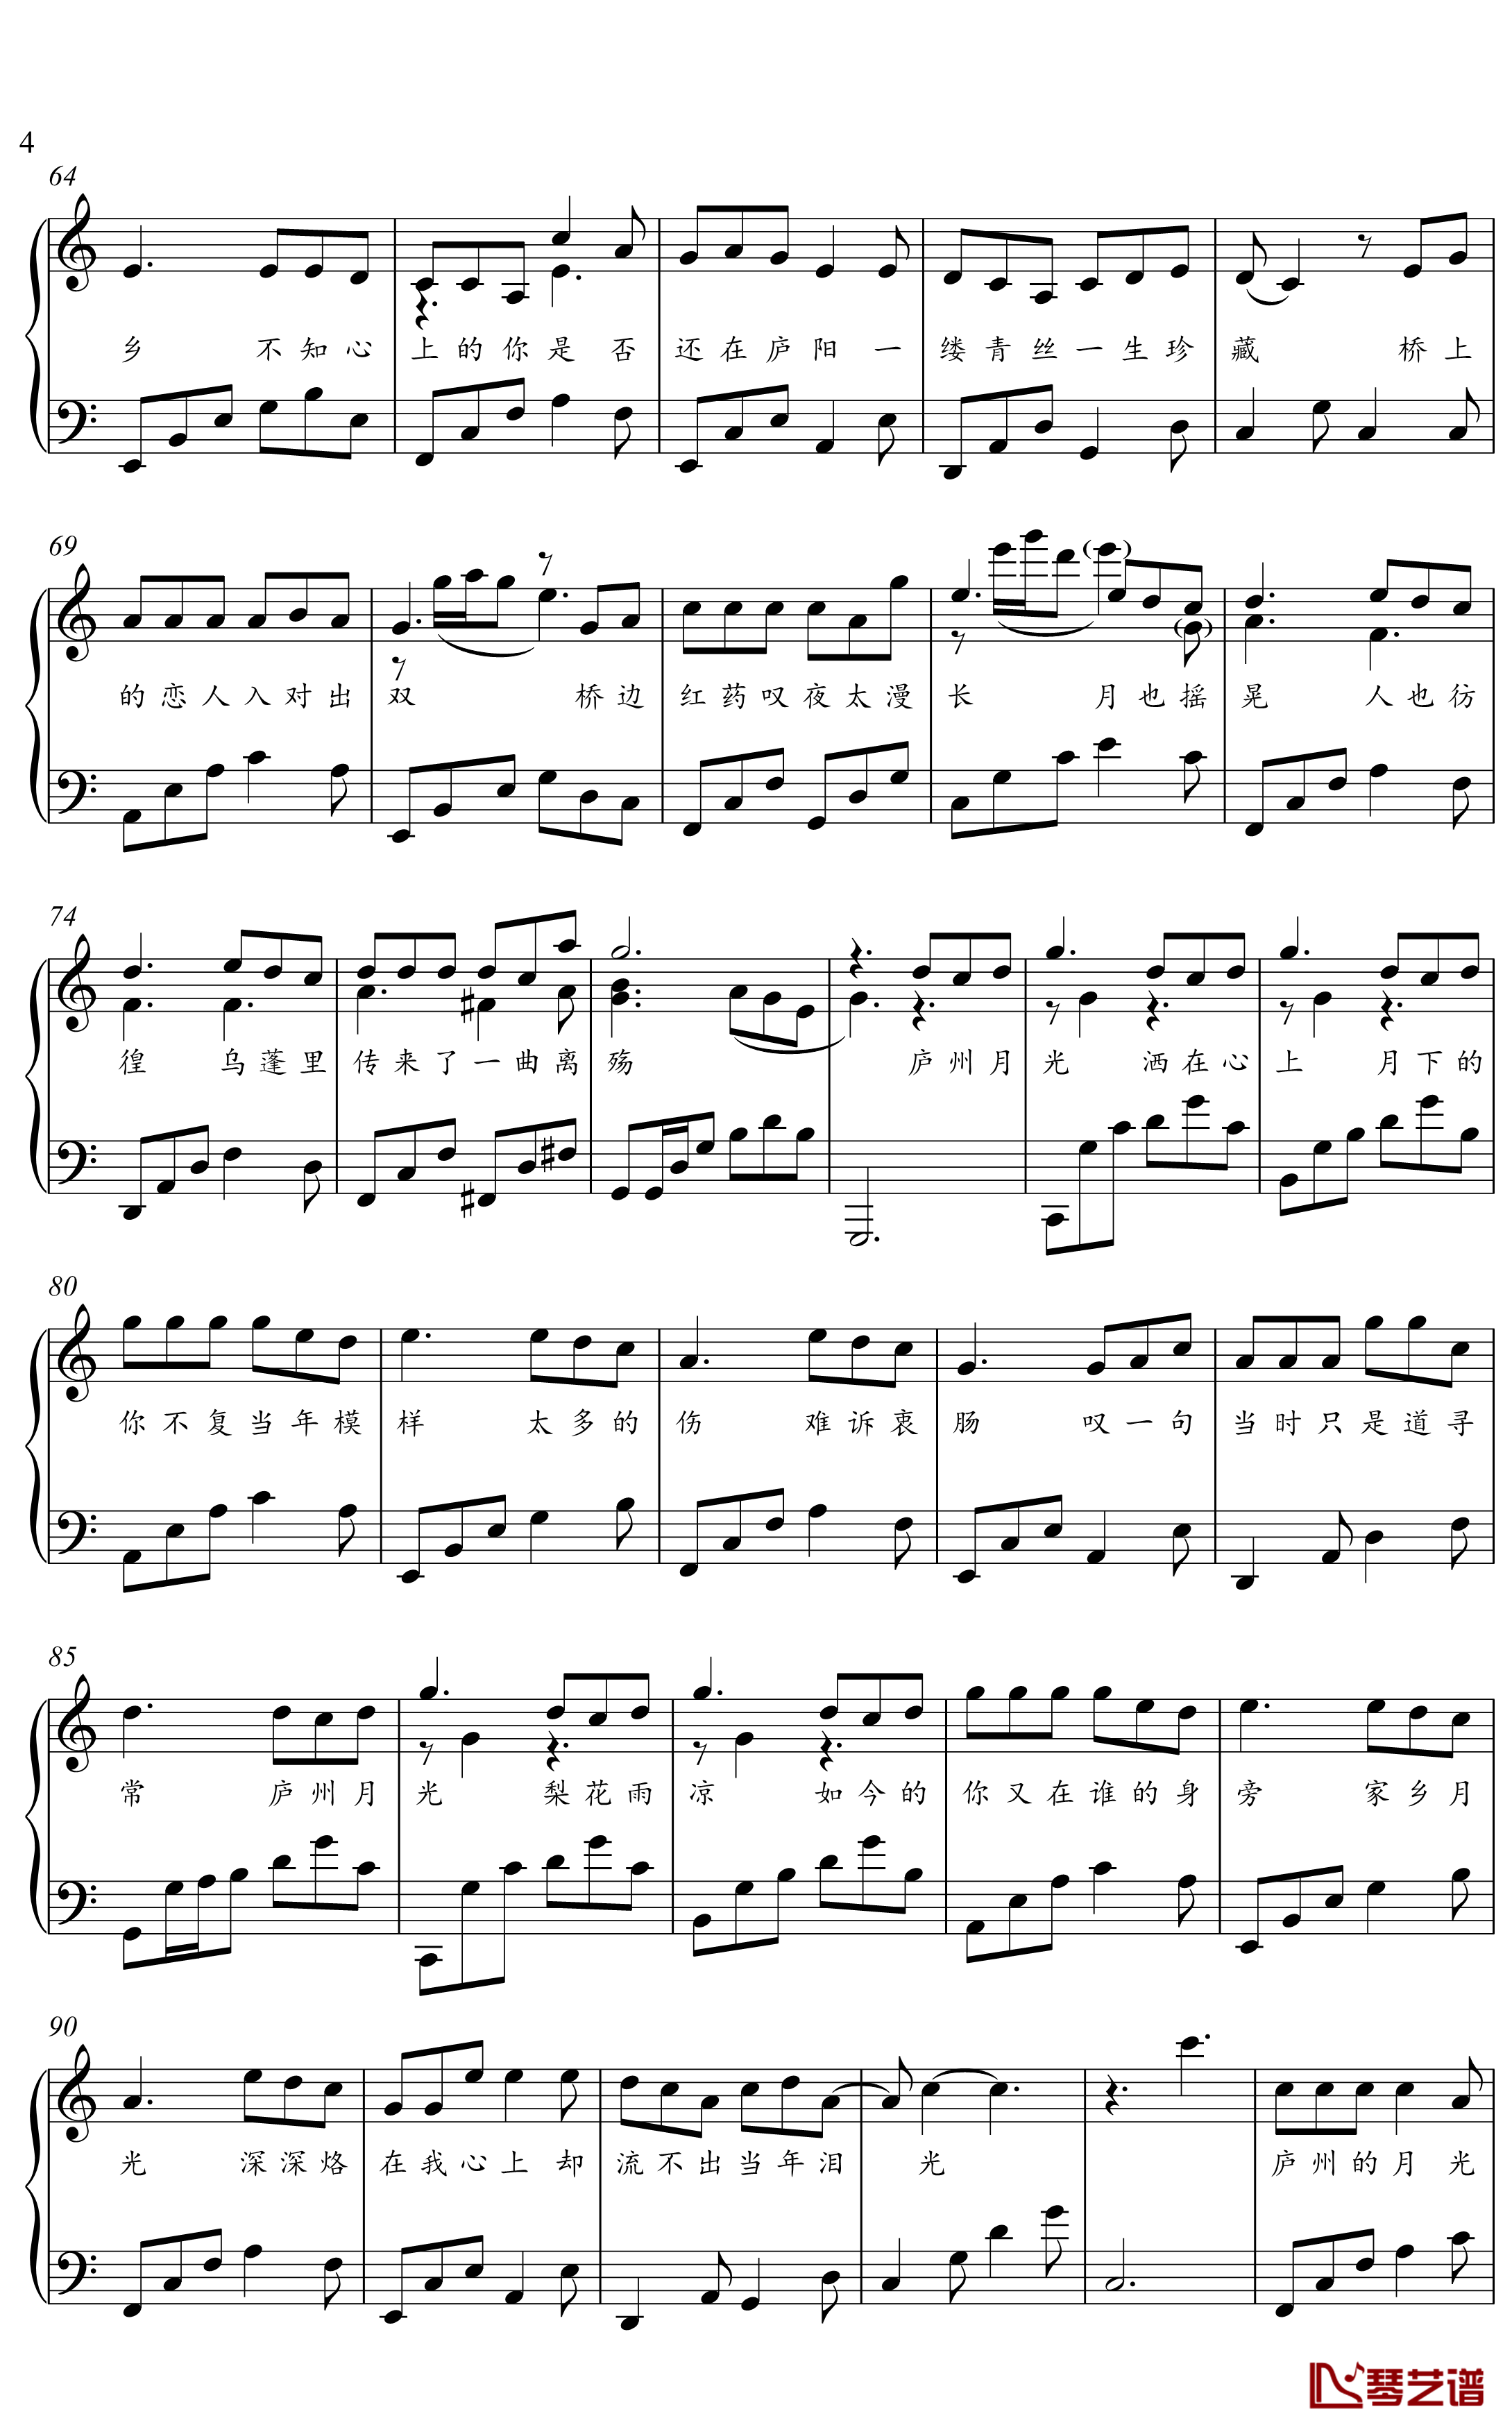 庐州月钢琴谱-金老师钢琴独奏谱1912104